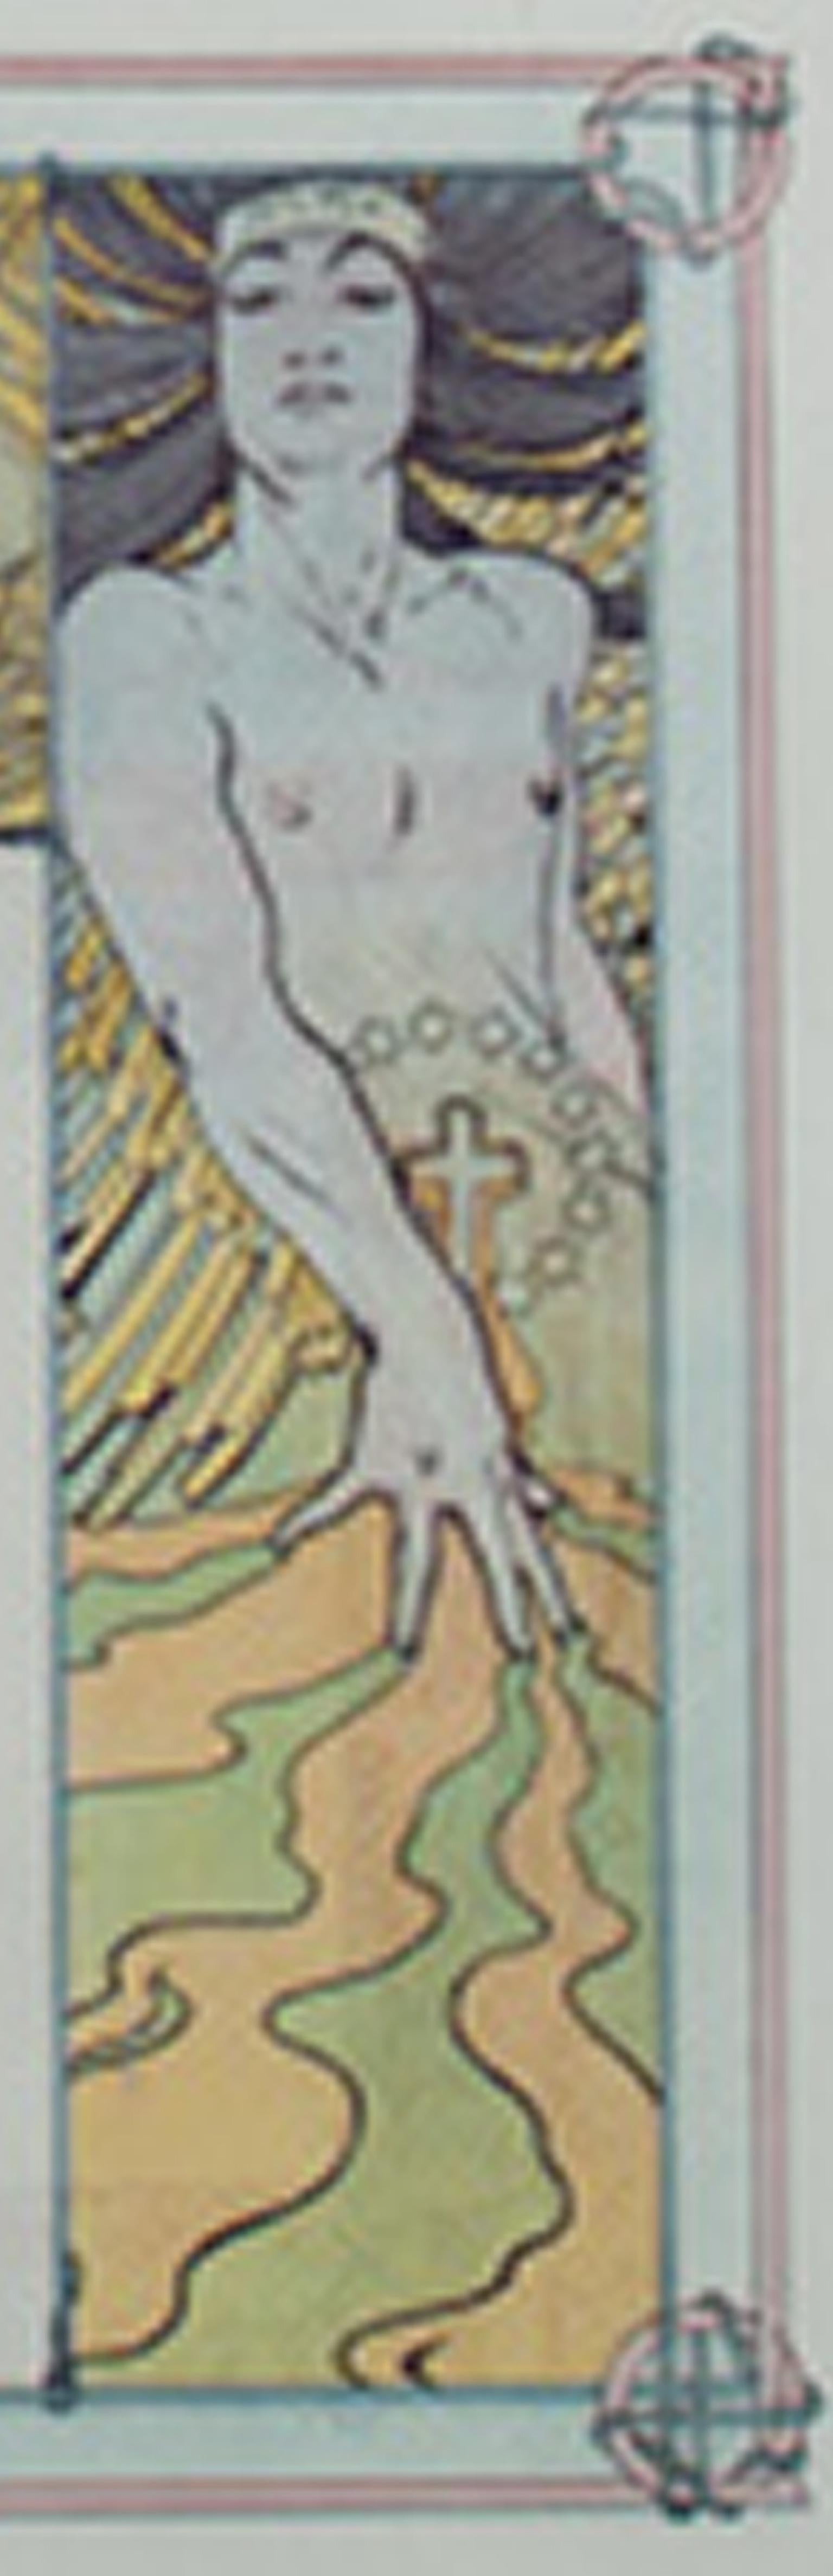 Farblithographie des späten 19. Jahrhunderts, Art nouveau-Bücherregal mit Blumenfigur, Jugendstil (Grau), Figurative Print, von Alphonse Mucha